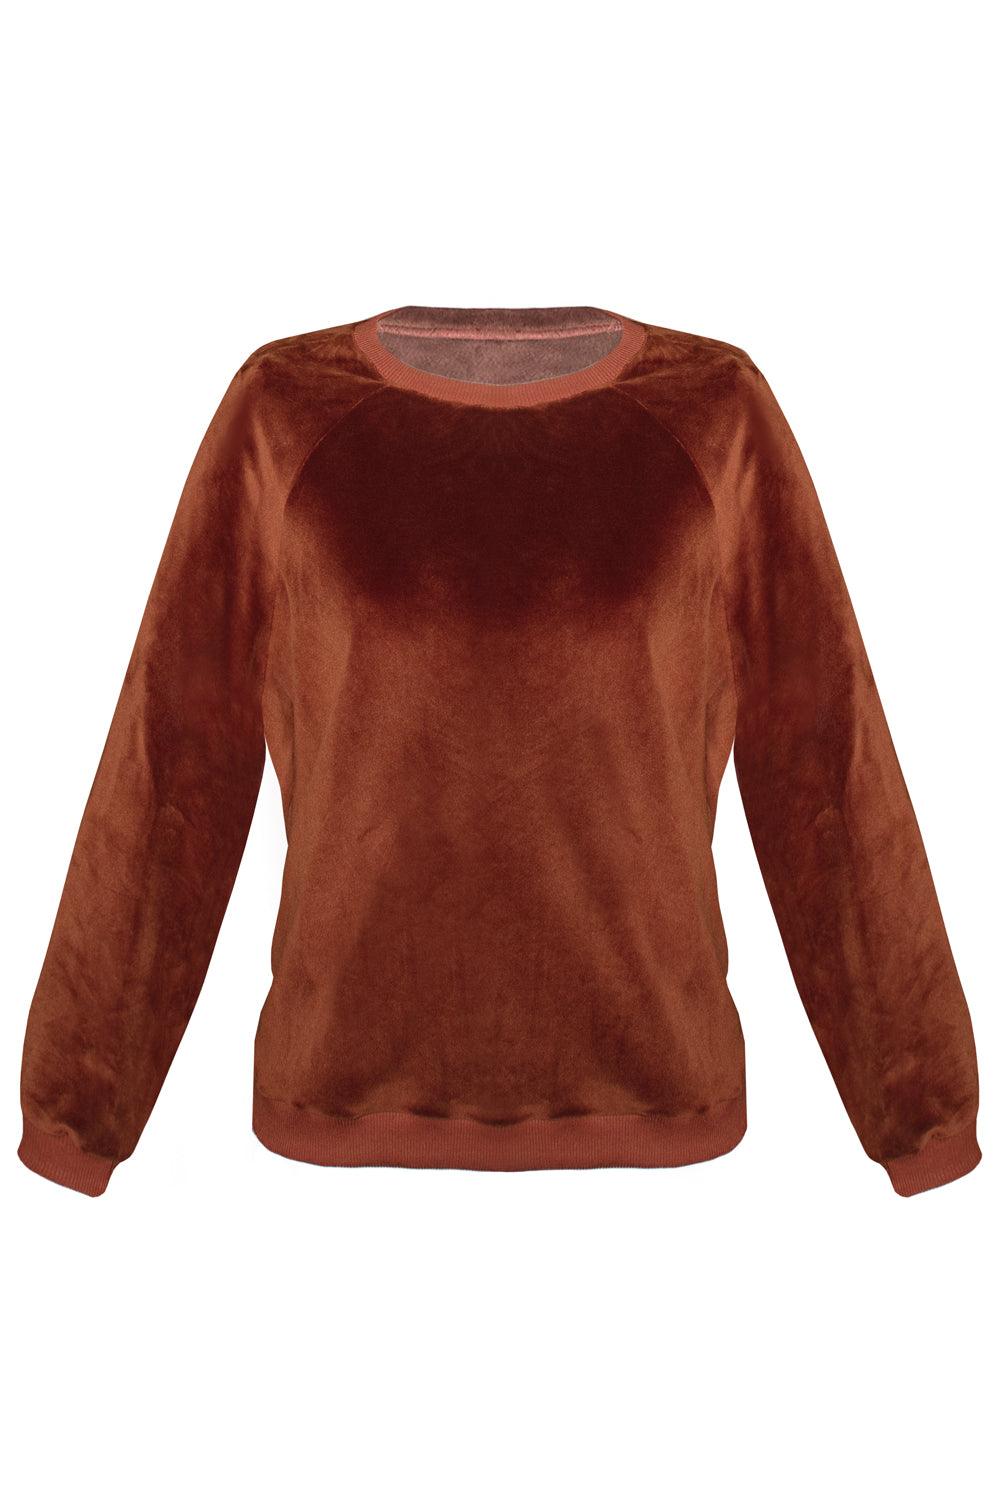 Foxy Terracotta sweater - Sweater by yesUndress. Shop on yesUndress